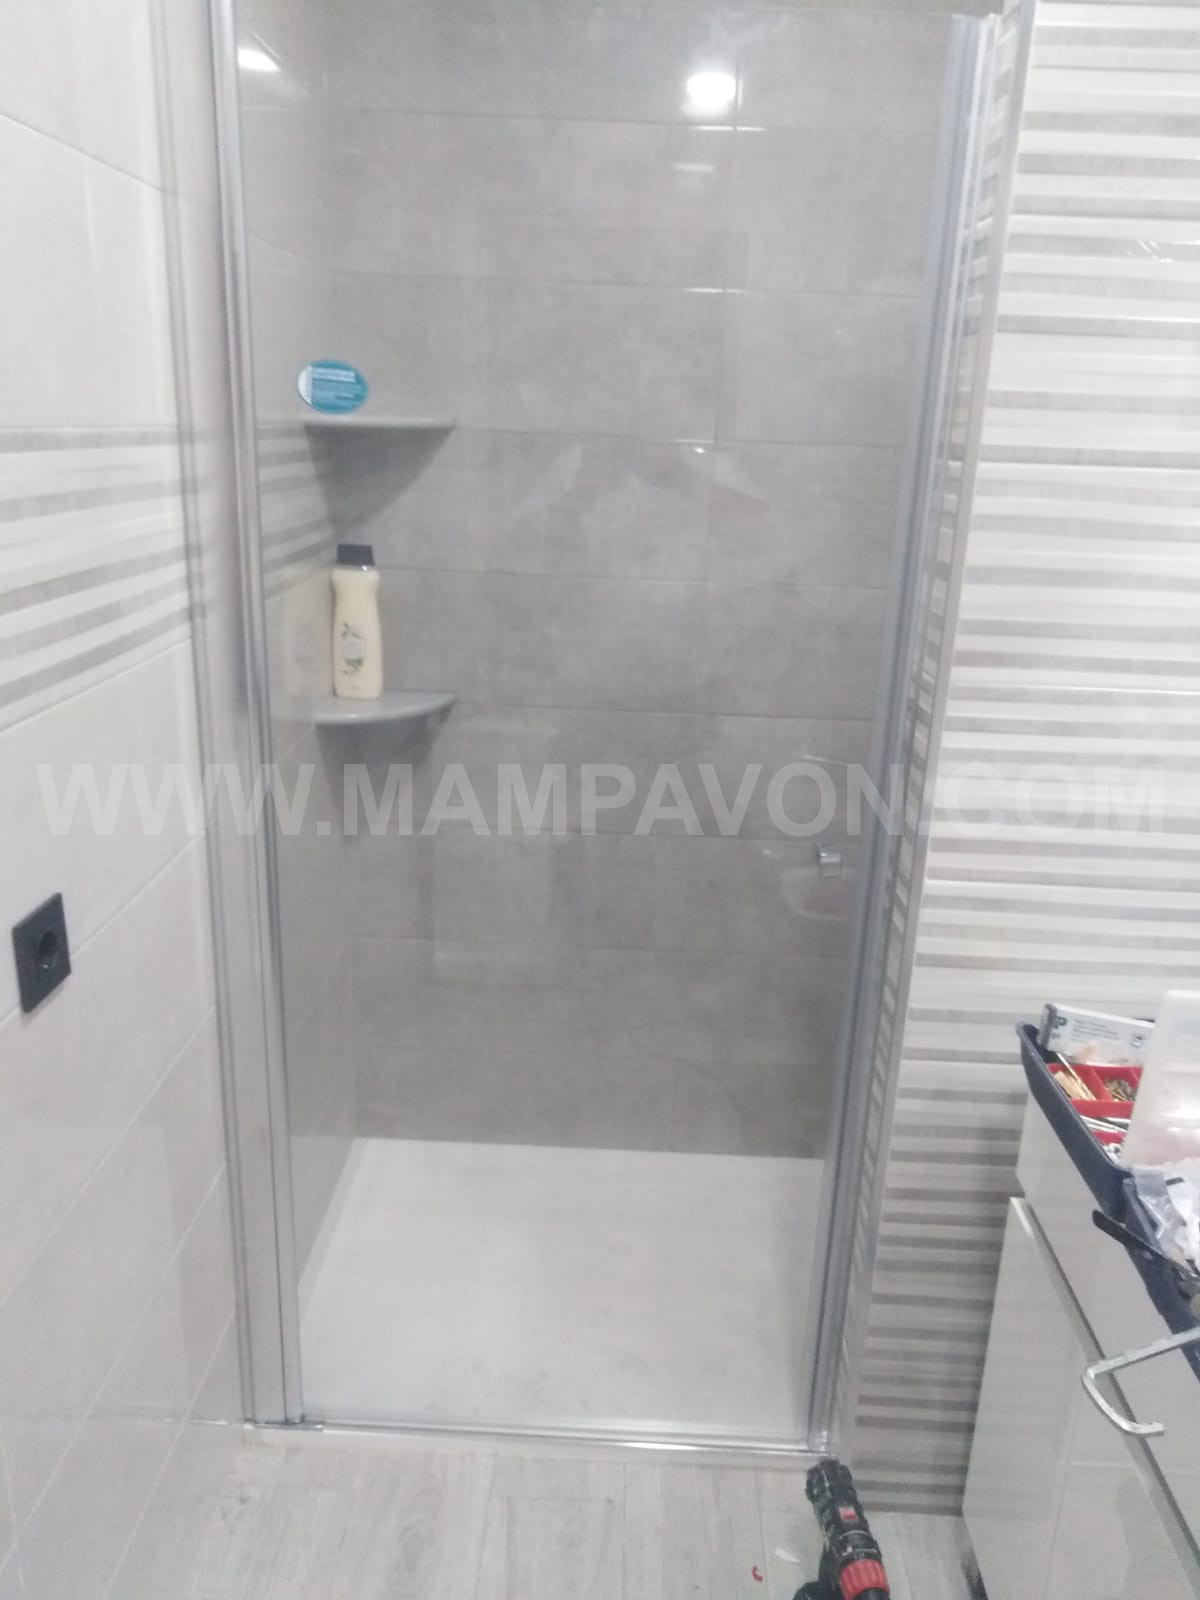 Mamparas de ducha en Sevilla - Aluminio y PVC Sevilla - Mampavón